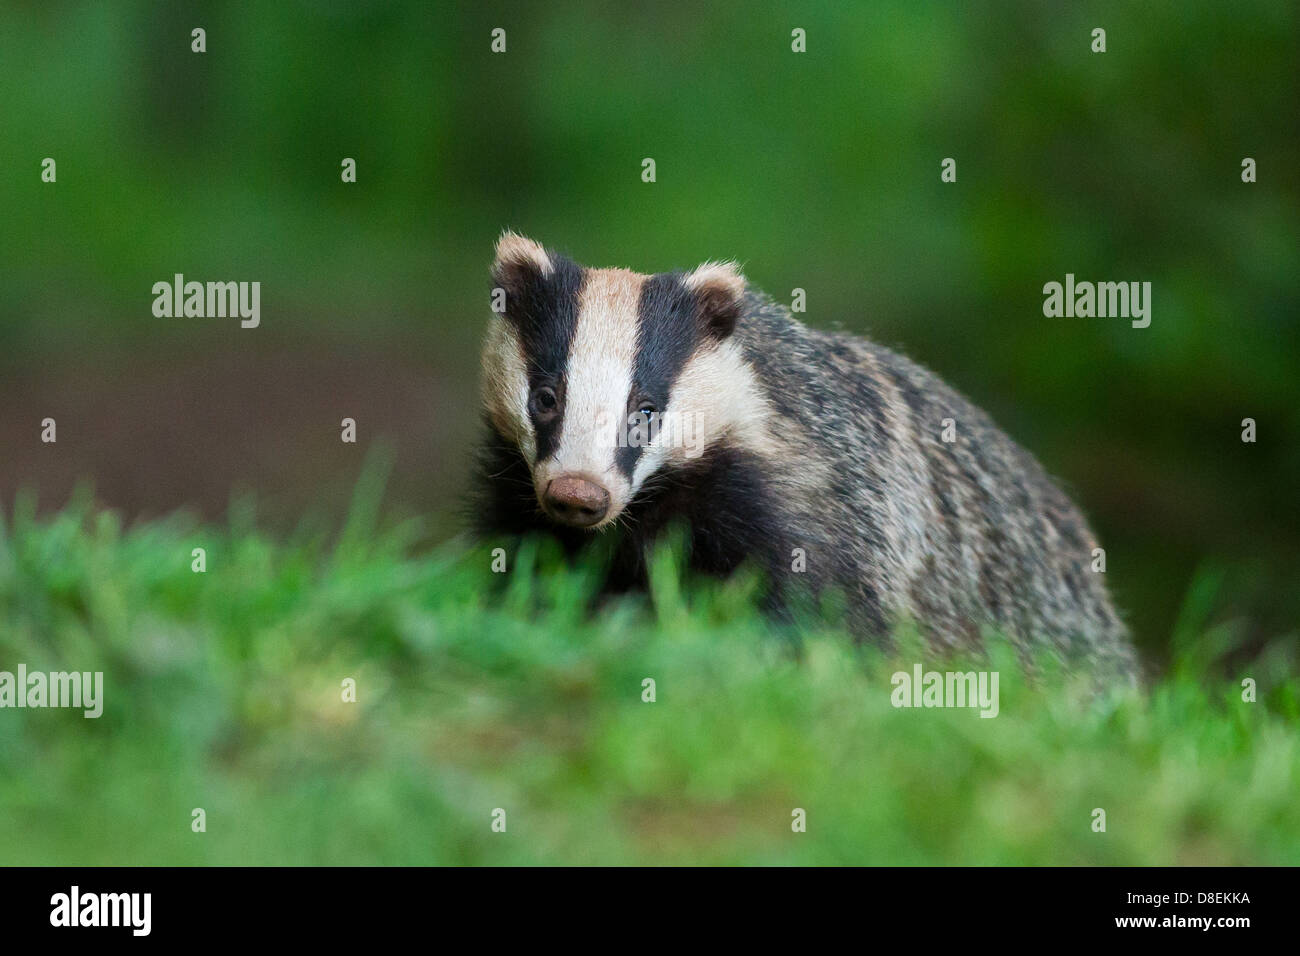 Female Badger (Meles meles) on grass in woodland, portrait. UK Stock Photo